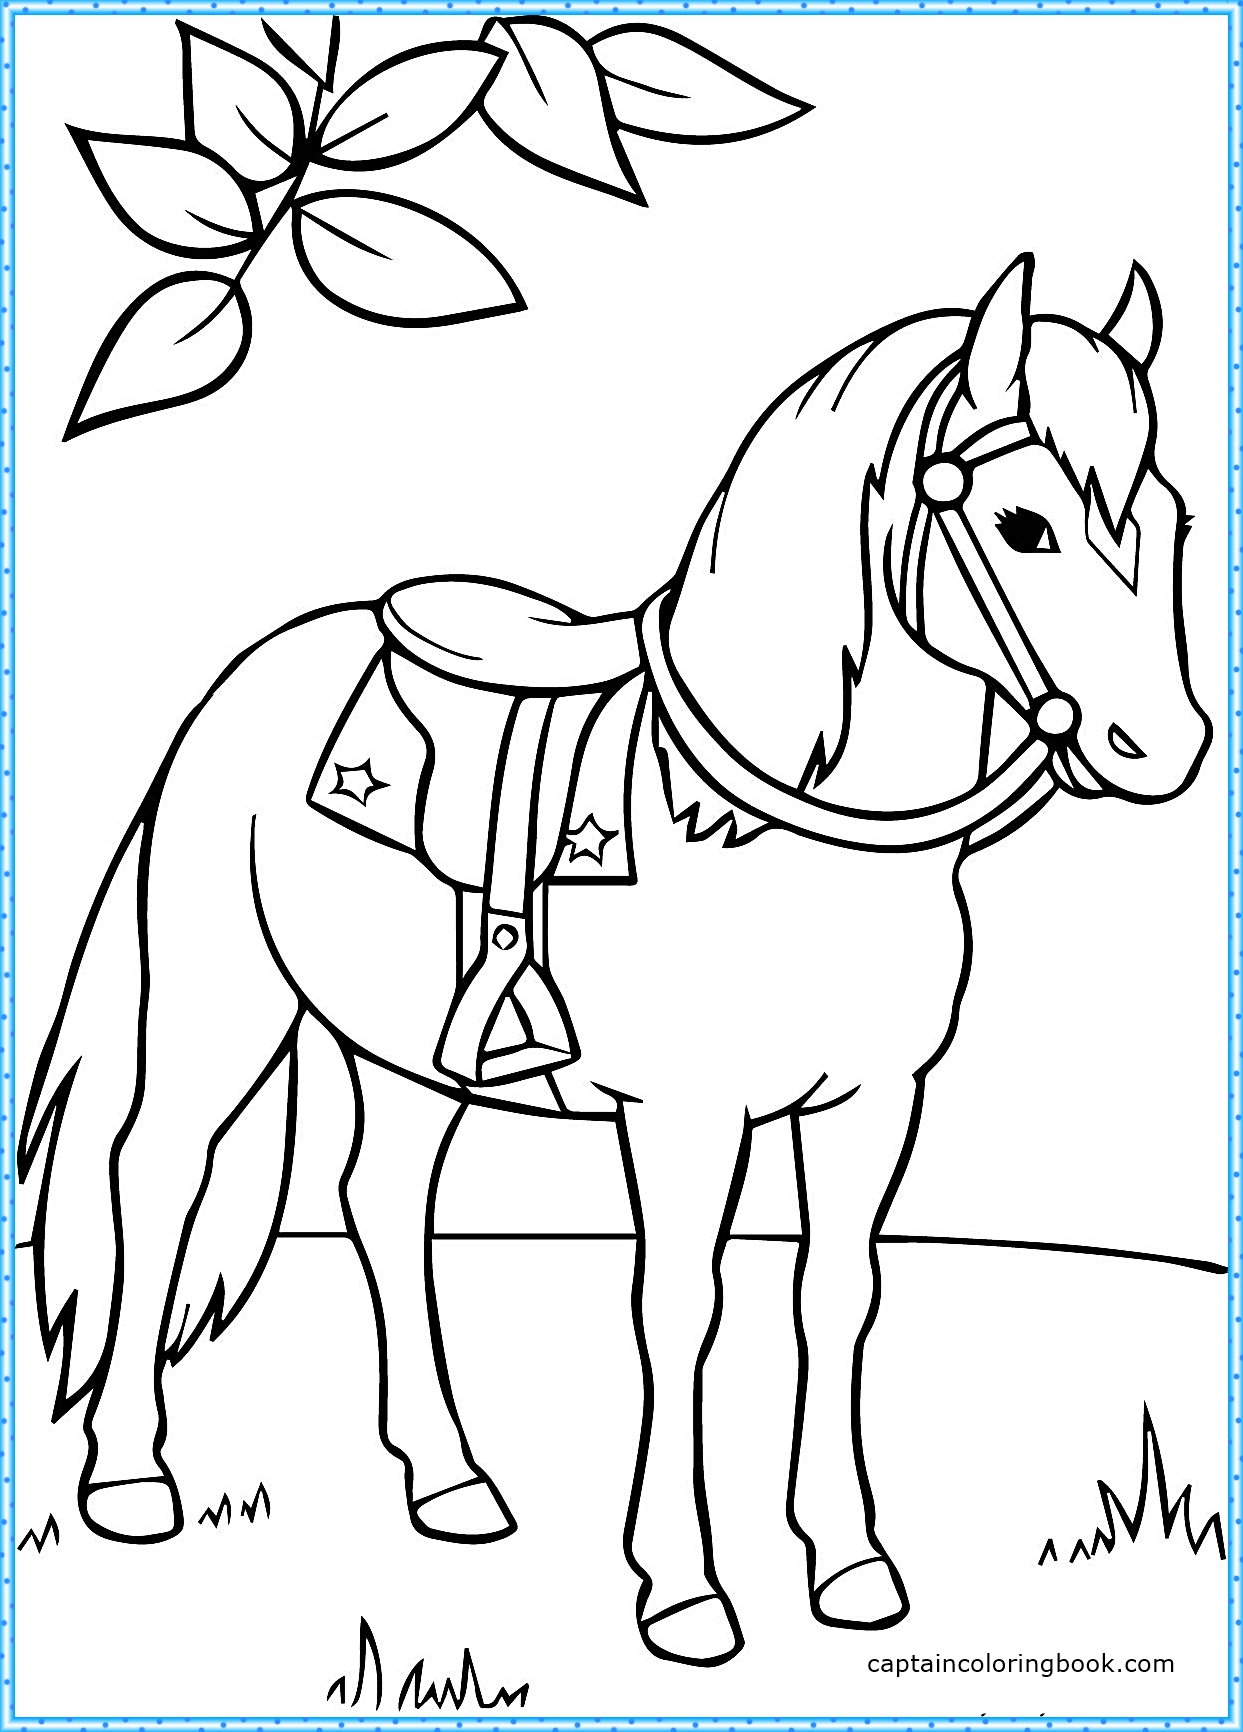 Раскрашиваем лошадку. Раскраска. Лошади. Лошадь раскраска для детей. Лошадка раскраска для малышей. Раскраски лошадки для девочек.